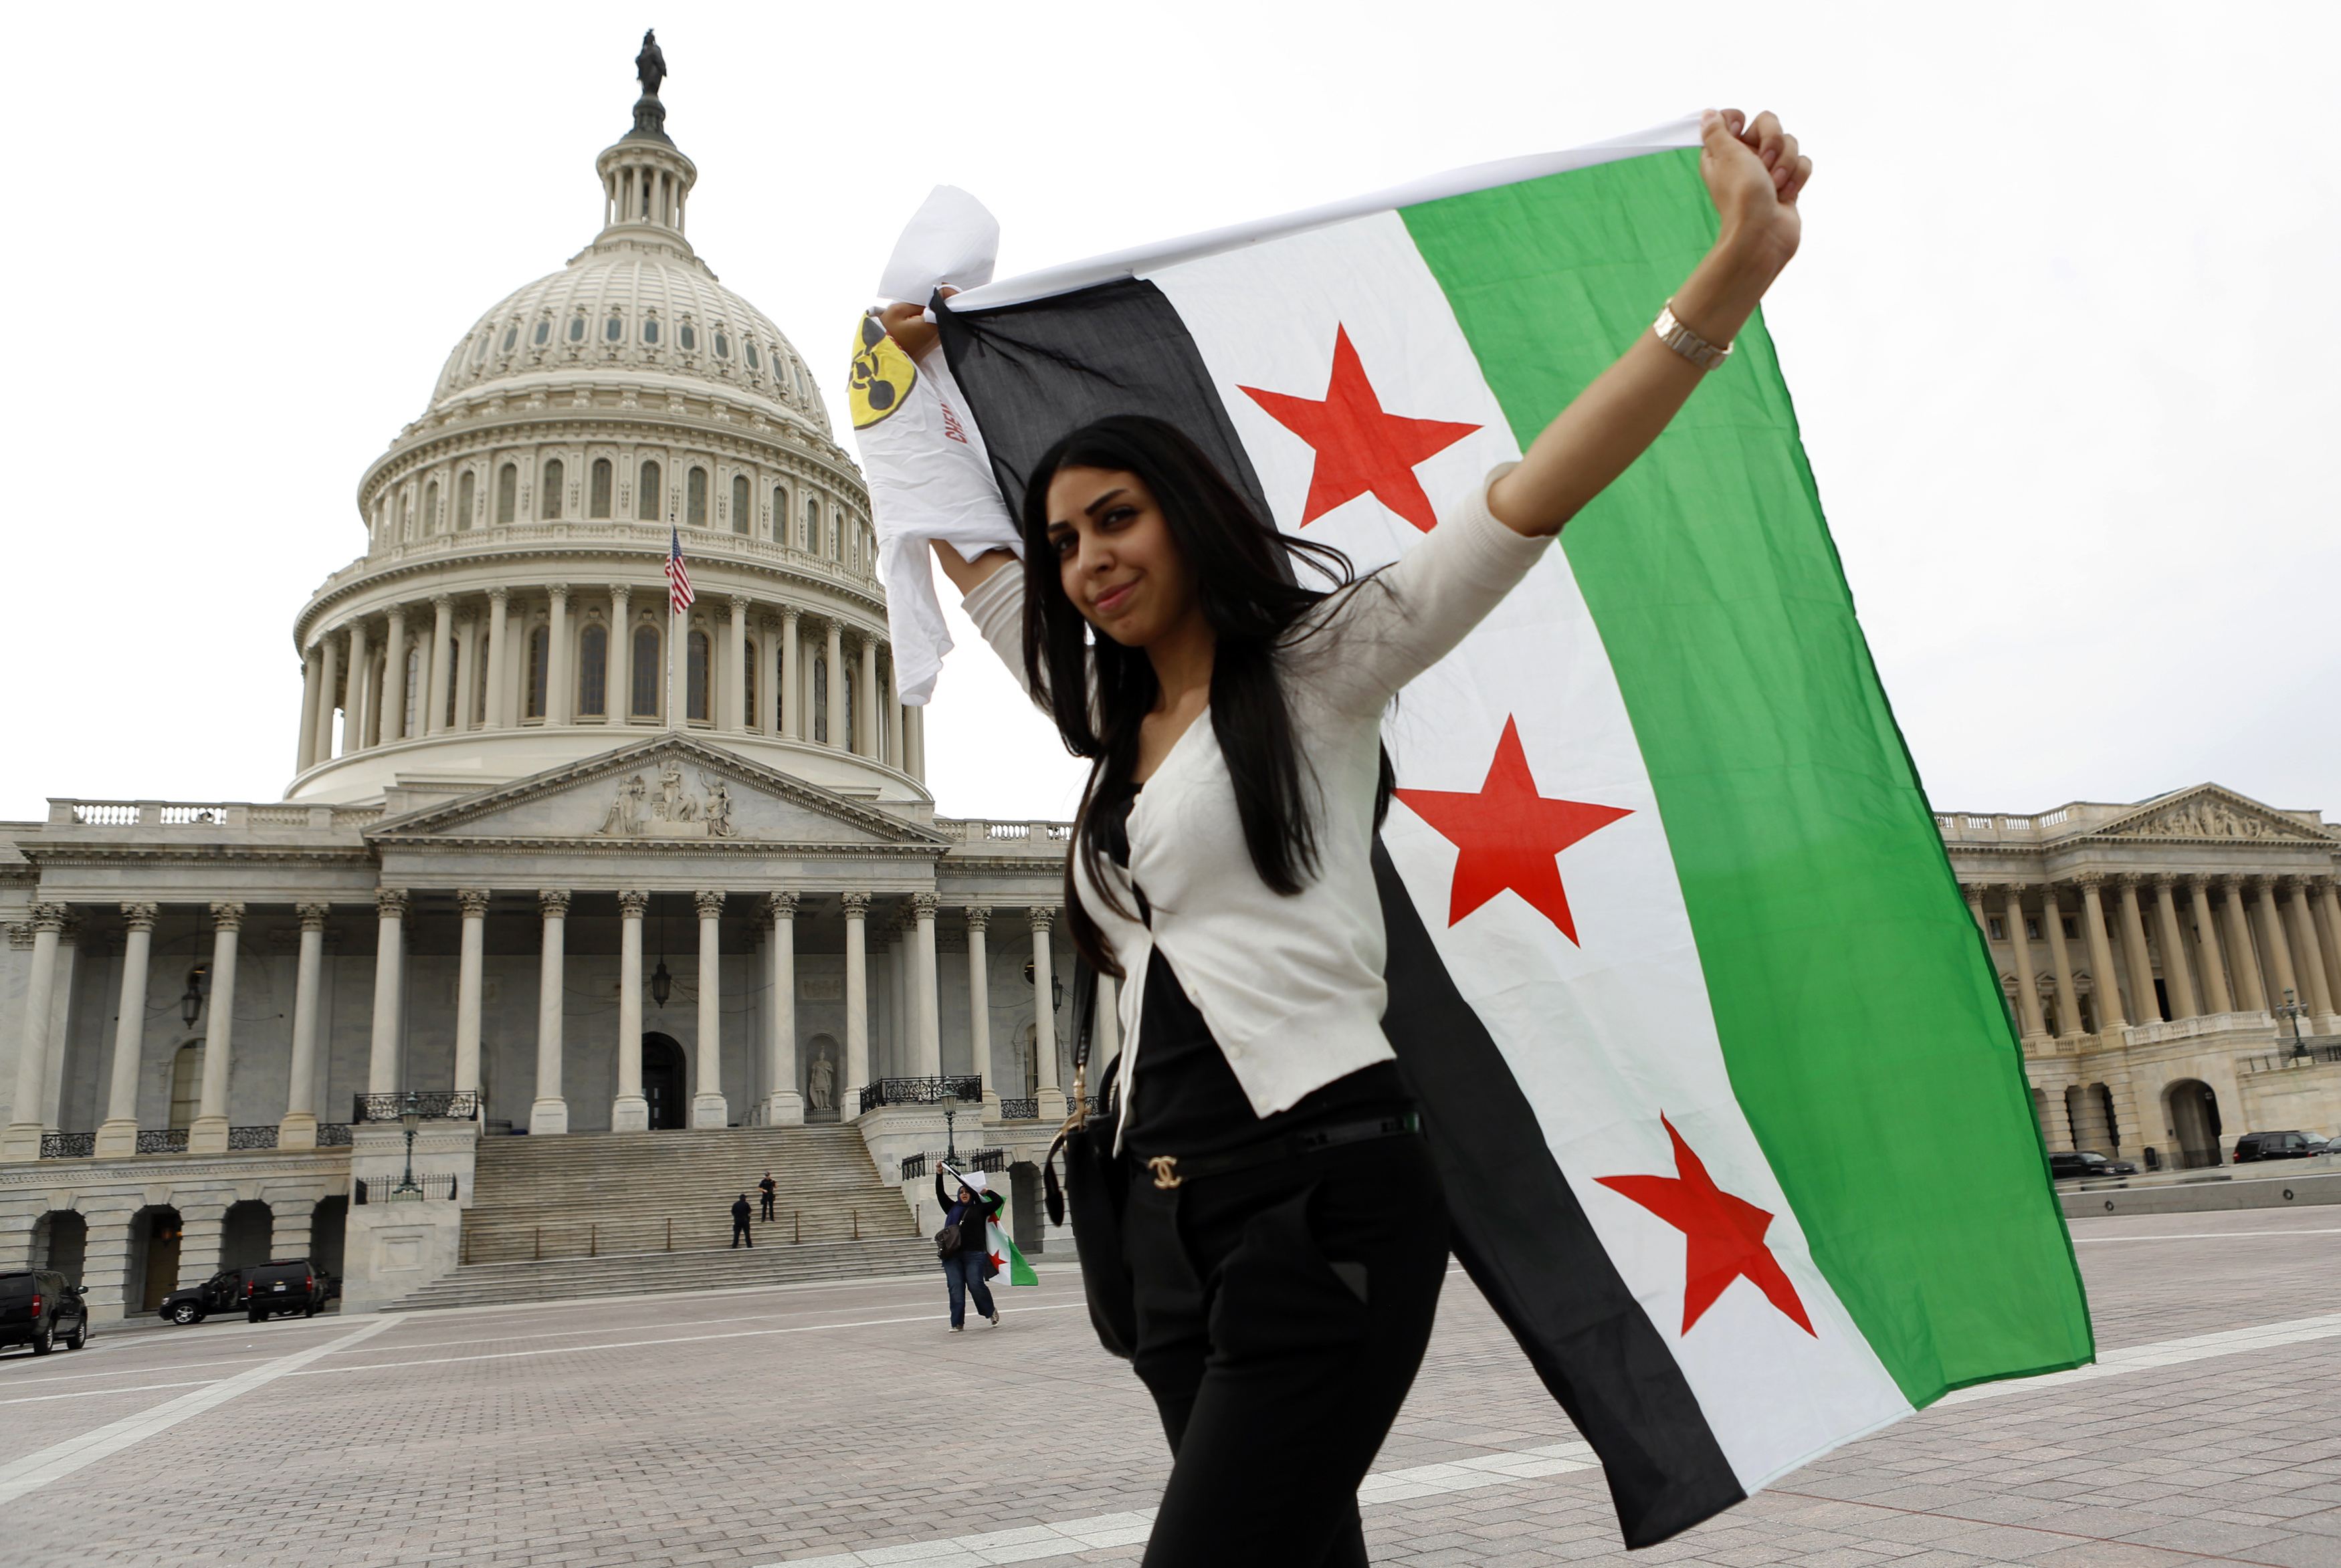 París, Londres y Washington piden a la ONU una resolución fuerte sobre Siria